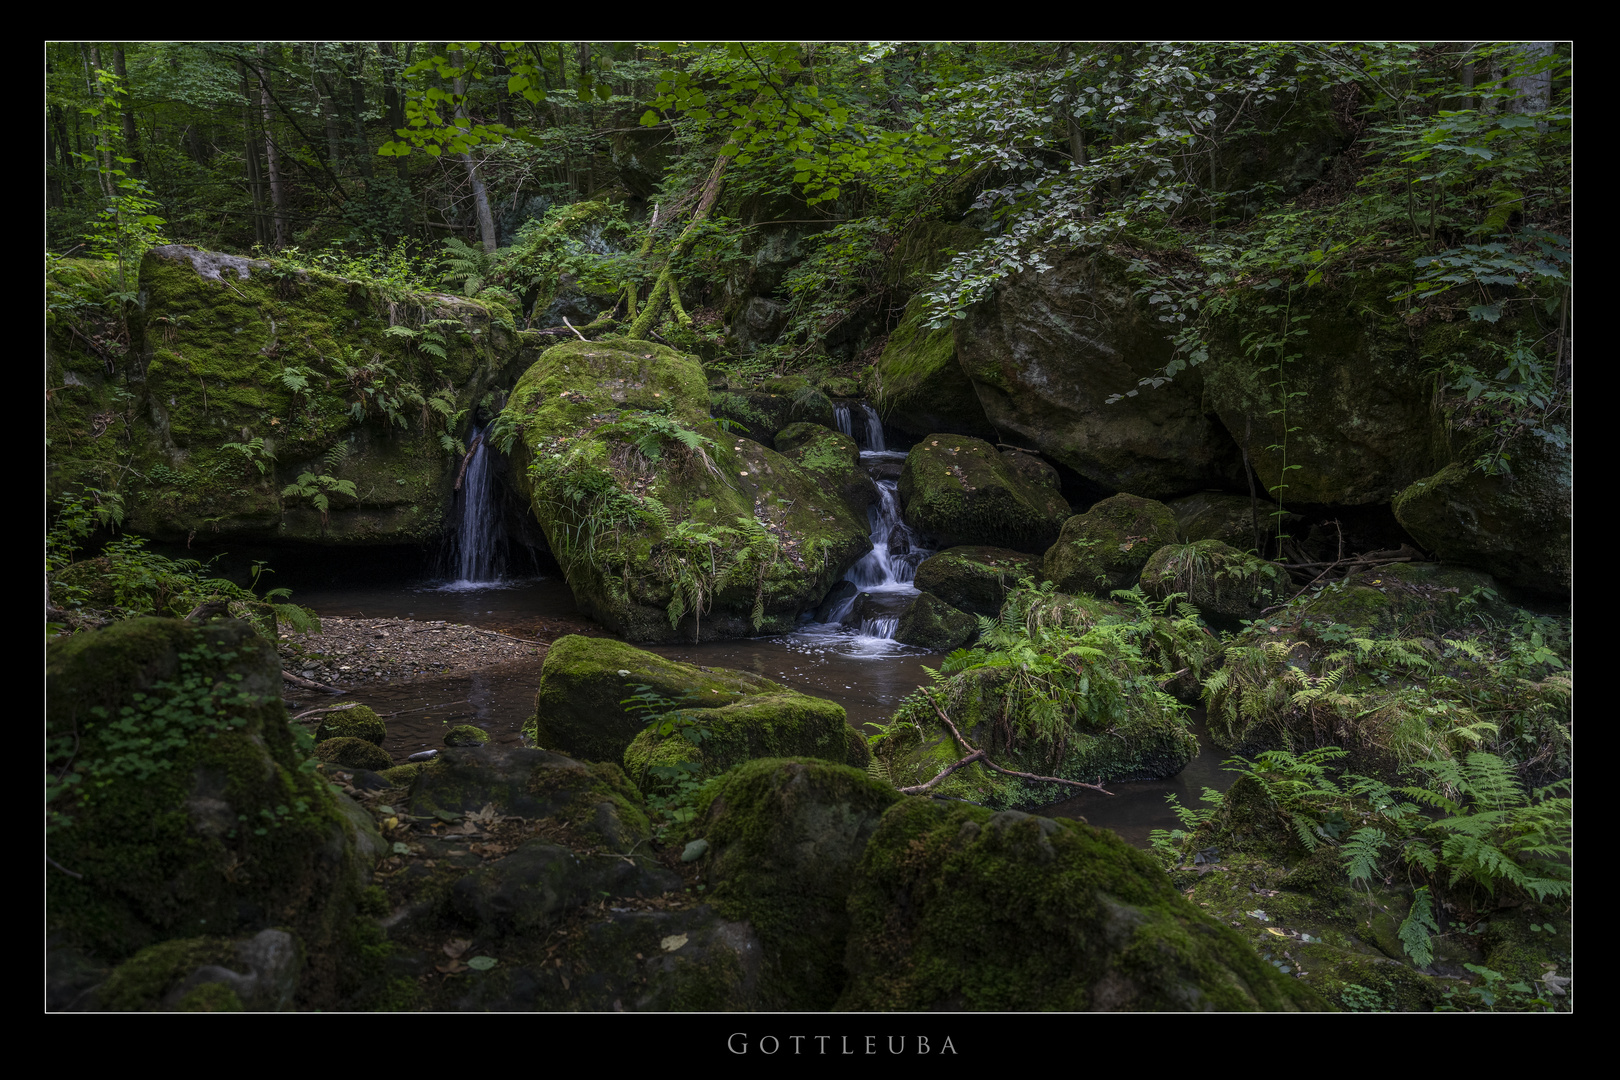 Kleiner Wasserfall an der Gottleuba